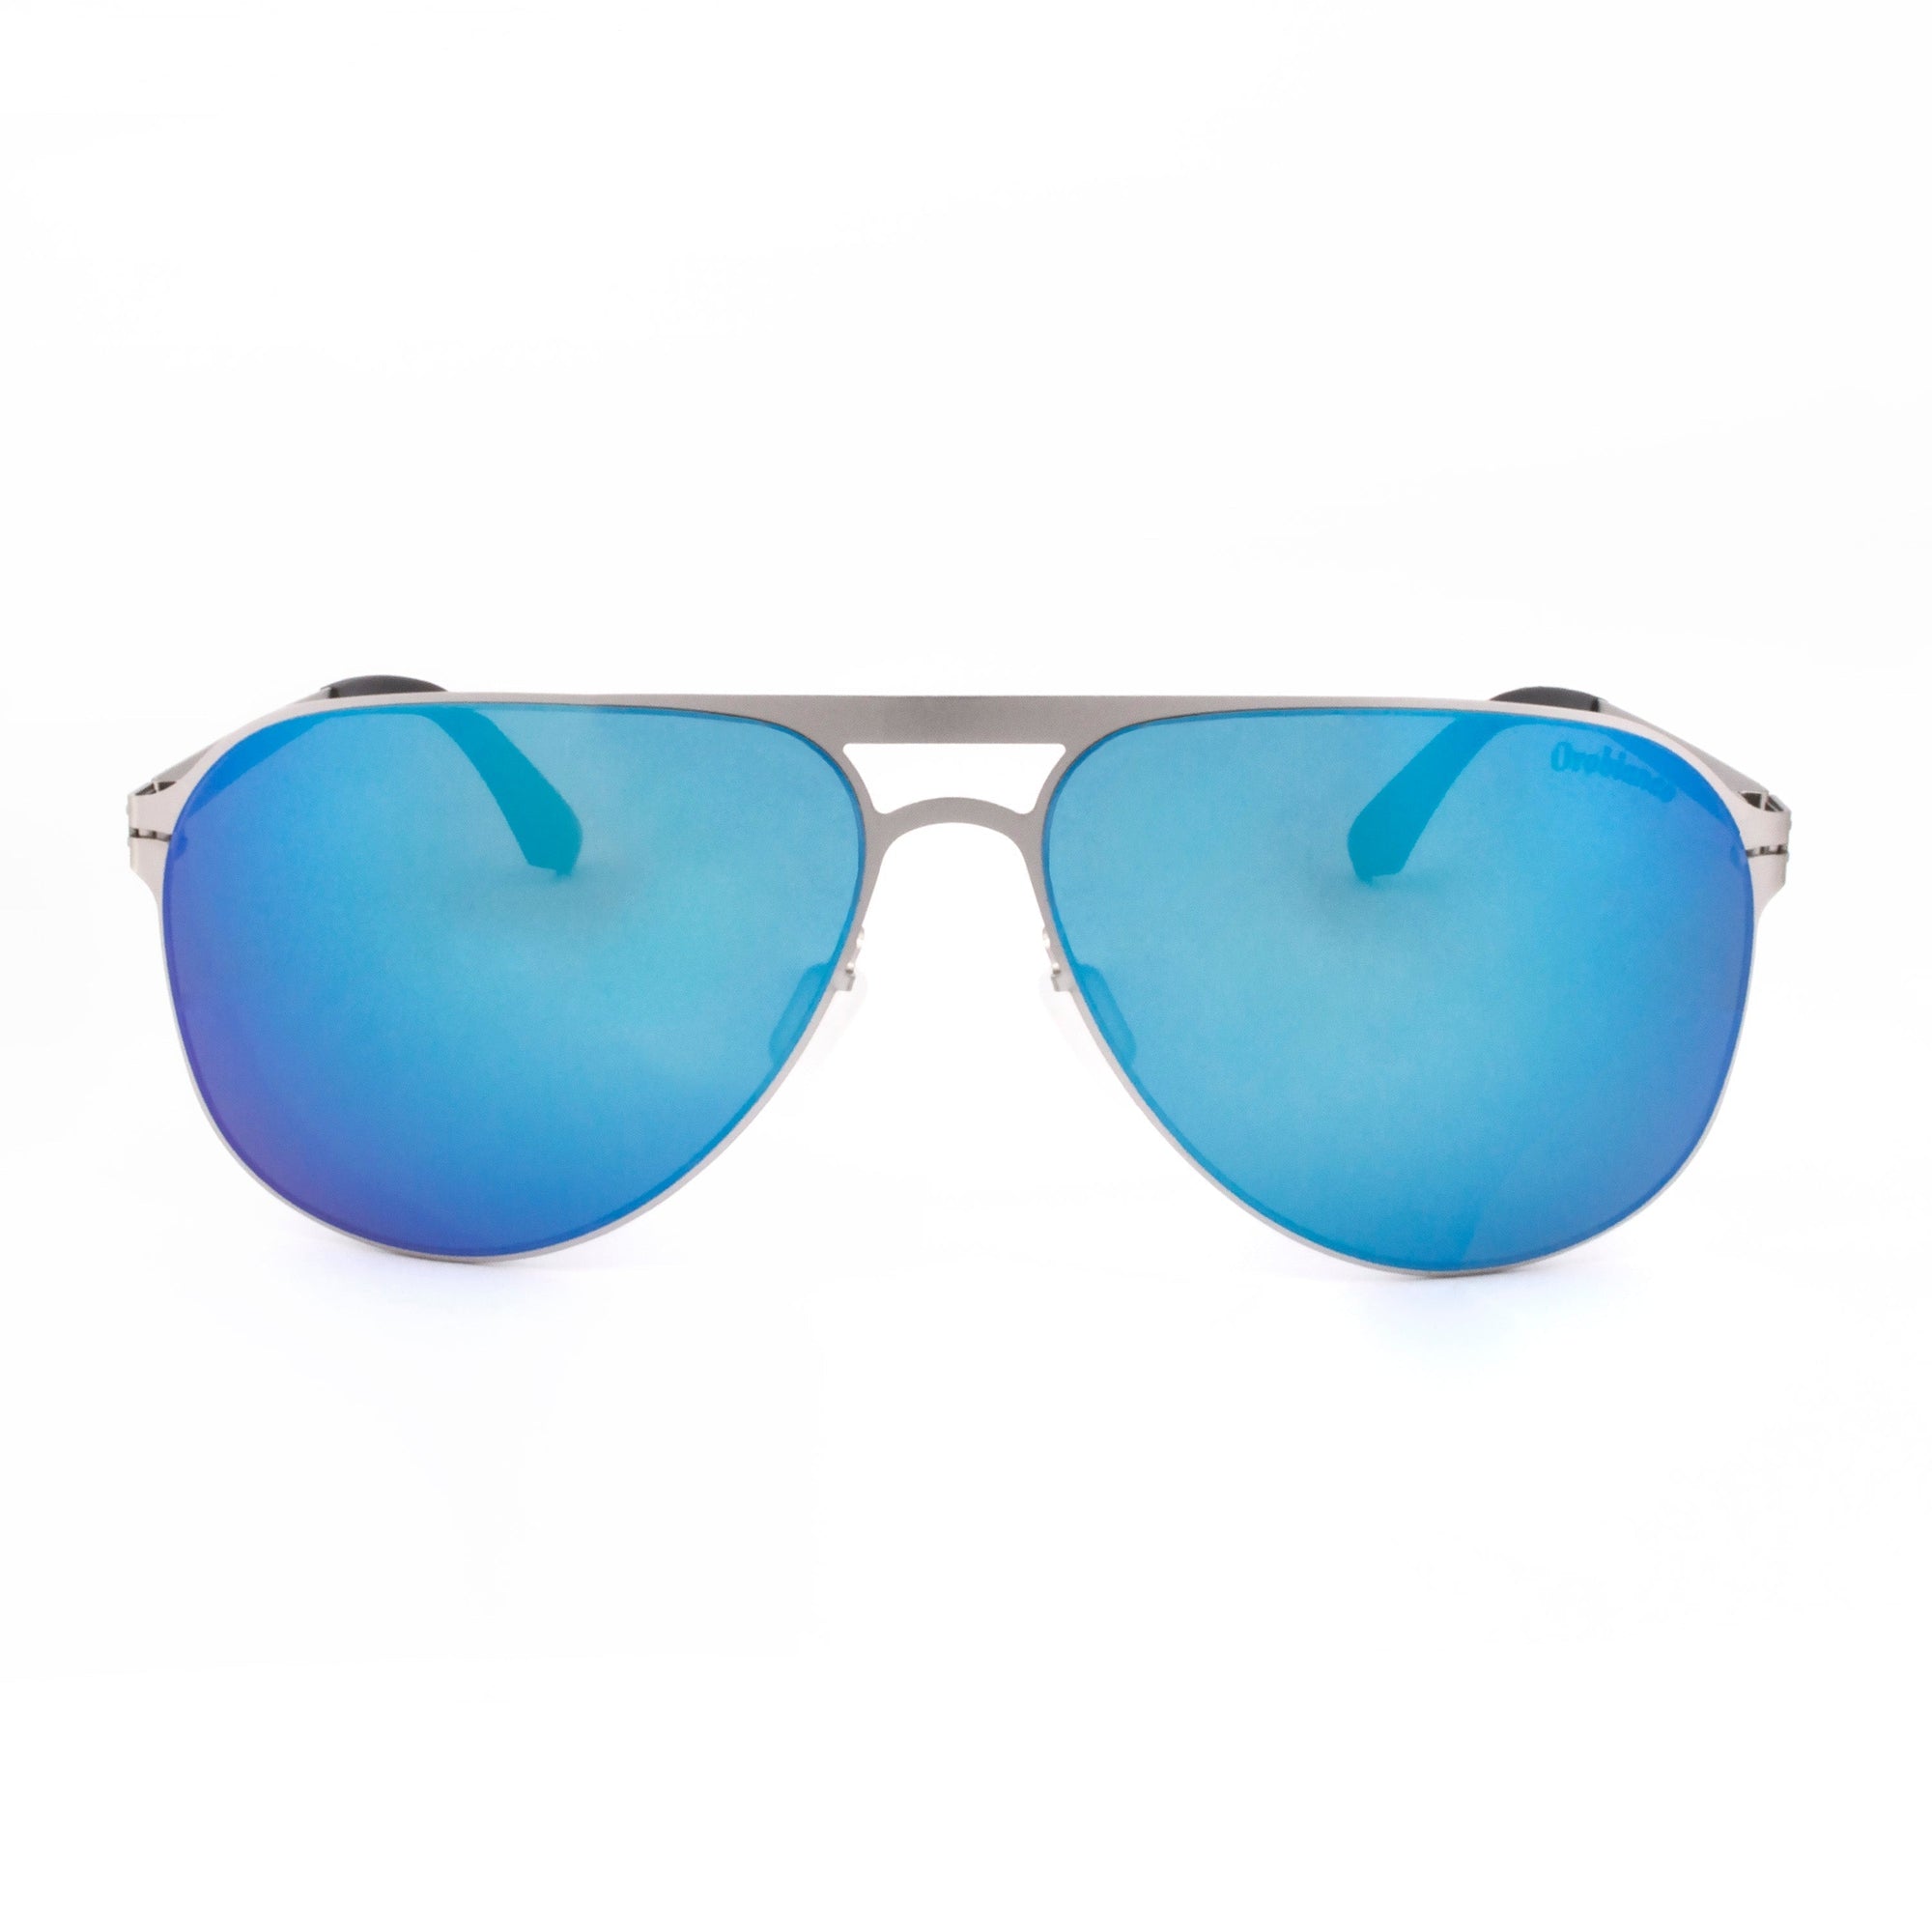 Orobianco Sunglasses-Sunglasses-Orobianco-Silver-Cufflinks.com.sg